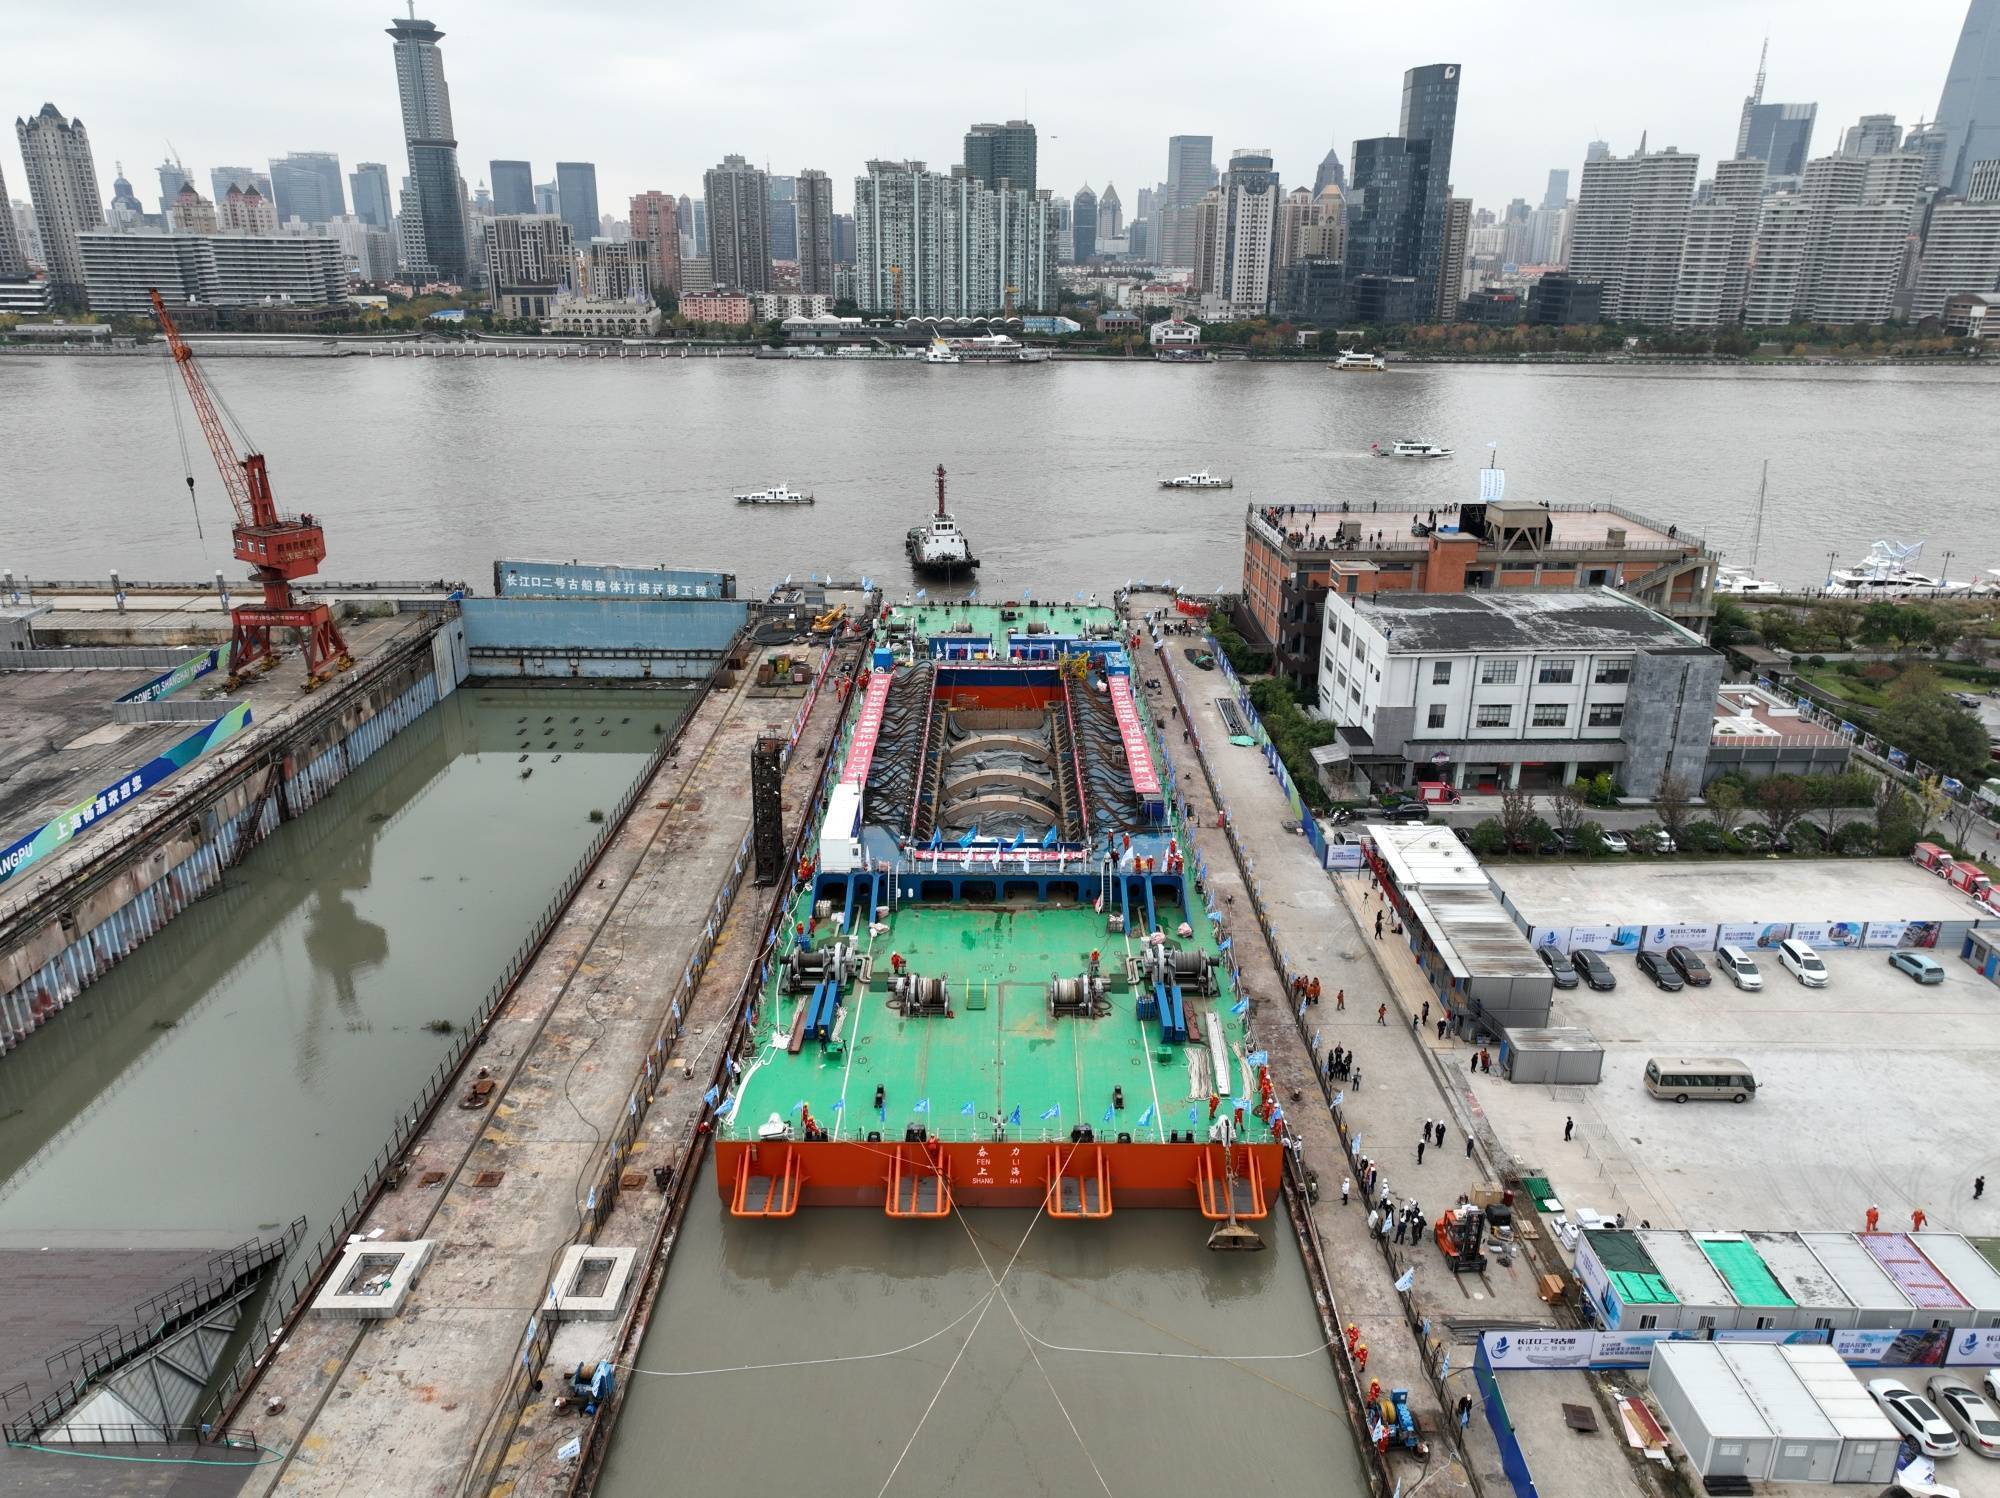 “古船”长江口二号古船转入考古与保护新阶段上海将建古船博物馆